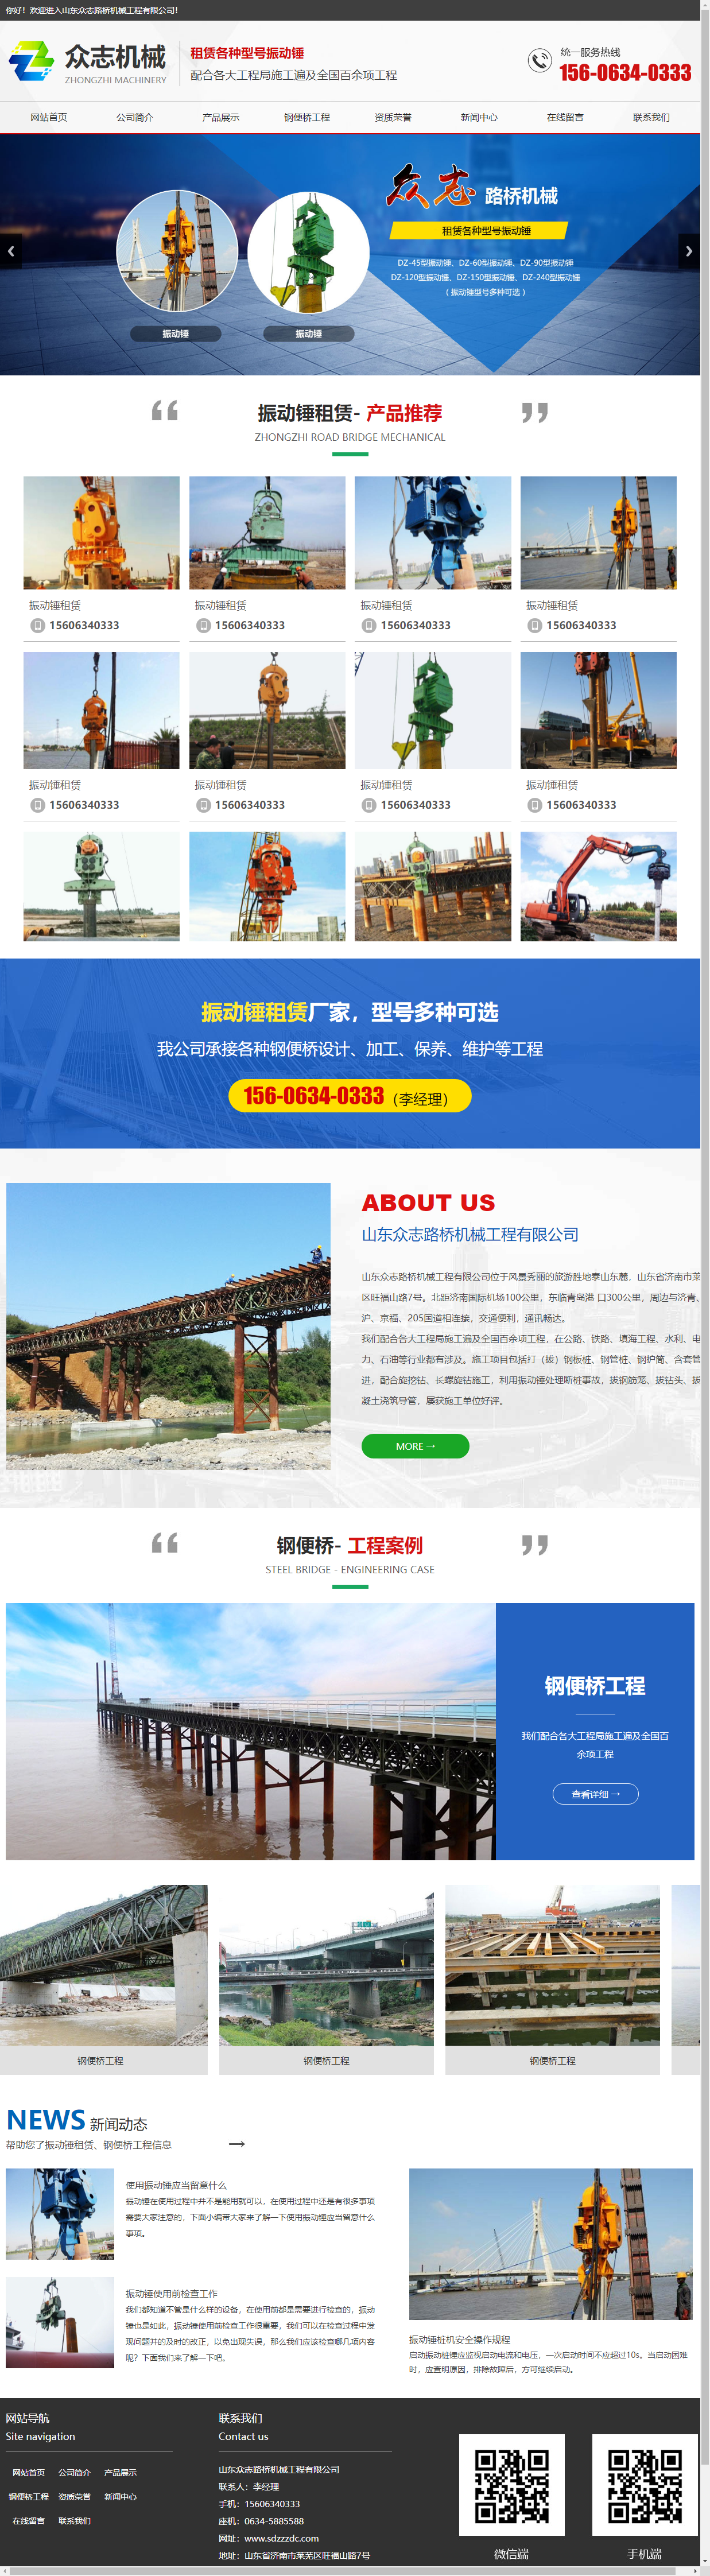 山东众志路桥机械工程有限公司网站案例